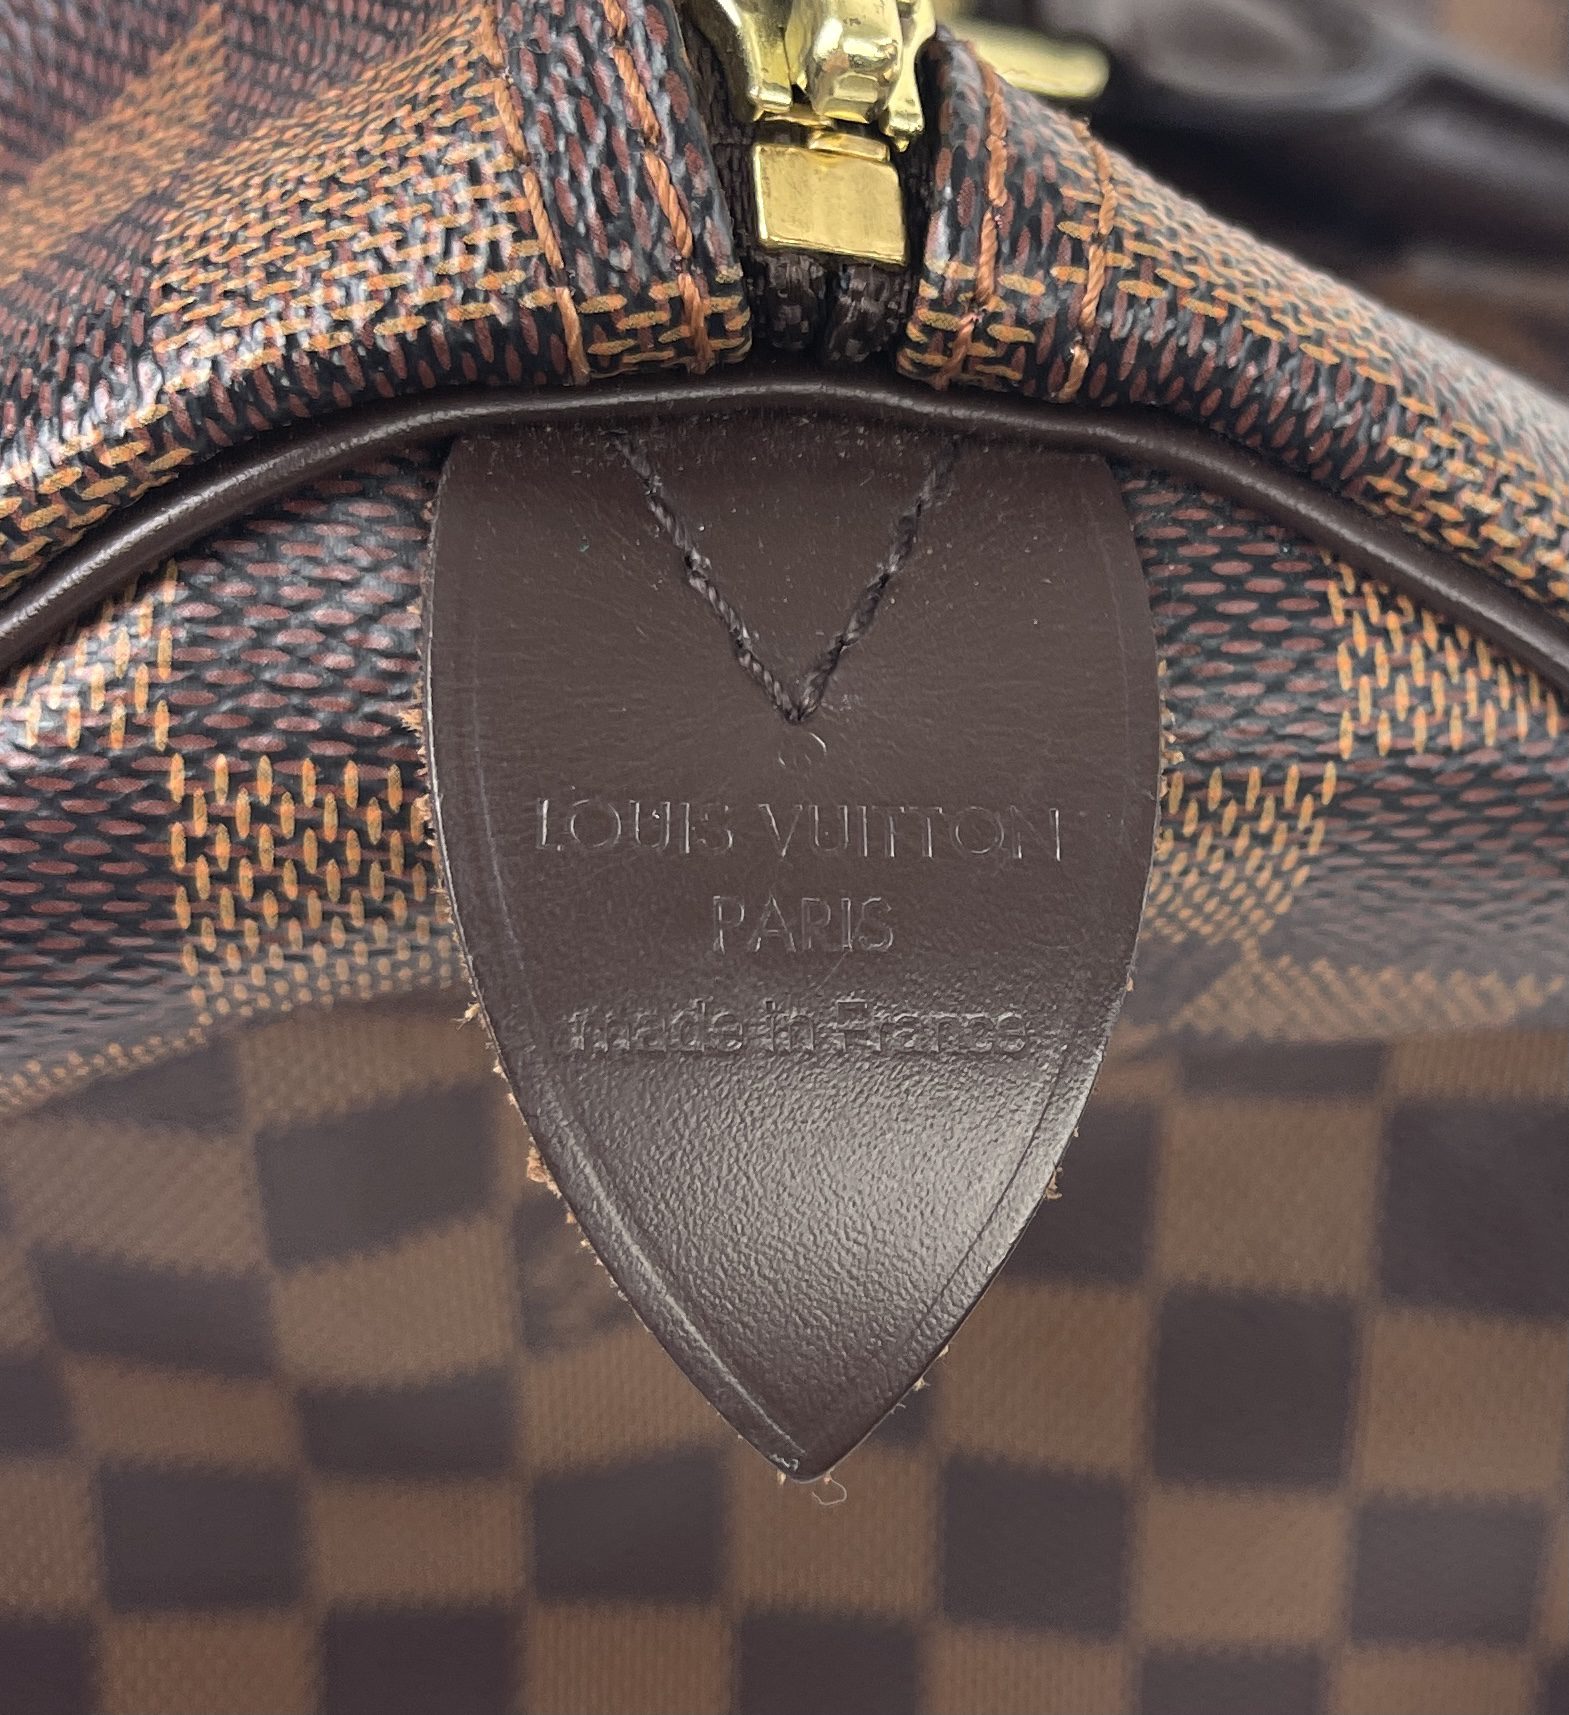 Louis Vuitton Speedy 35 Damier Ebene Handbag for Sale in Oviedo